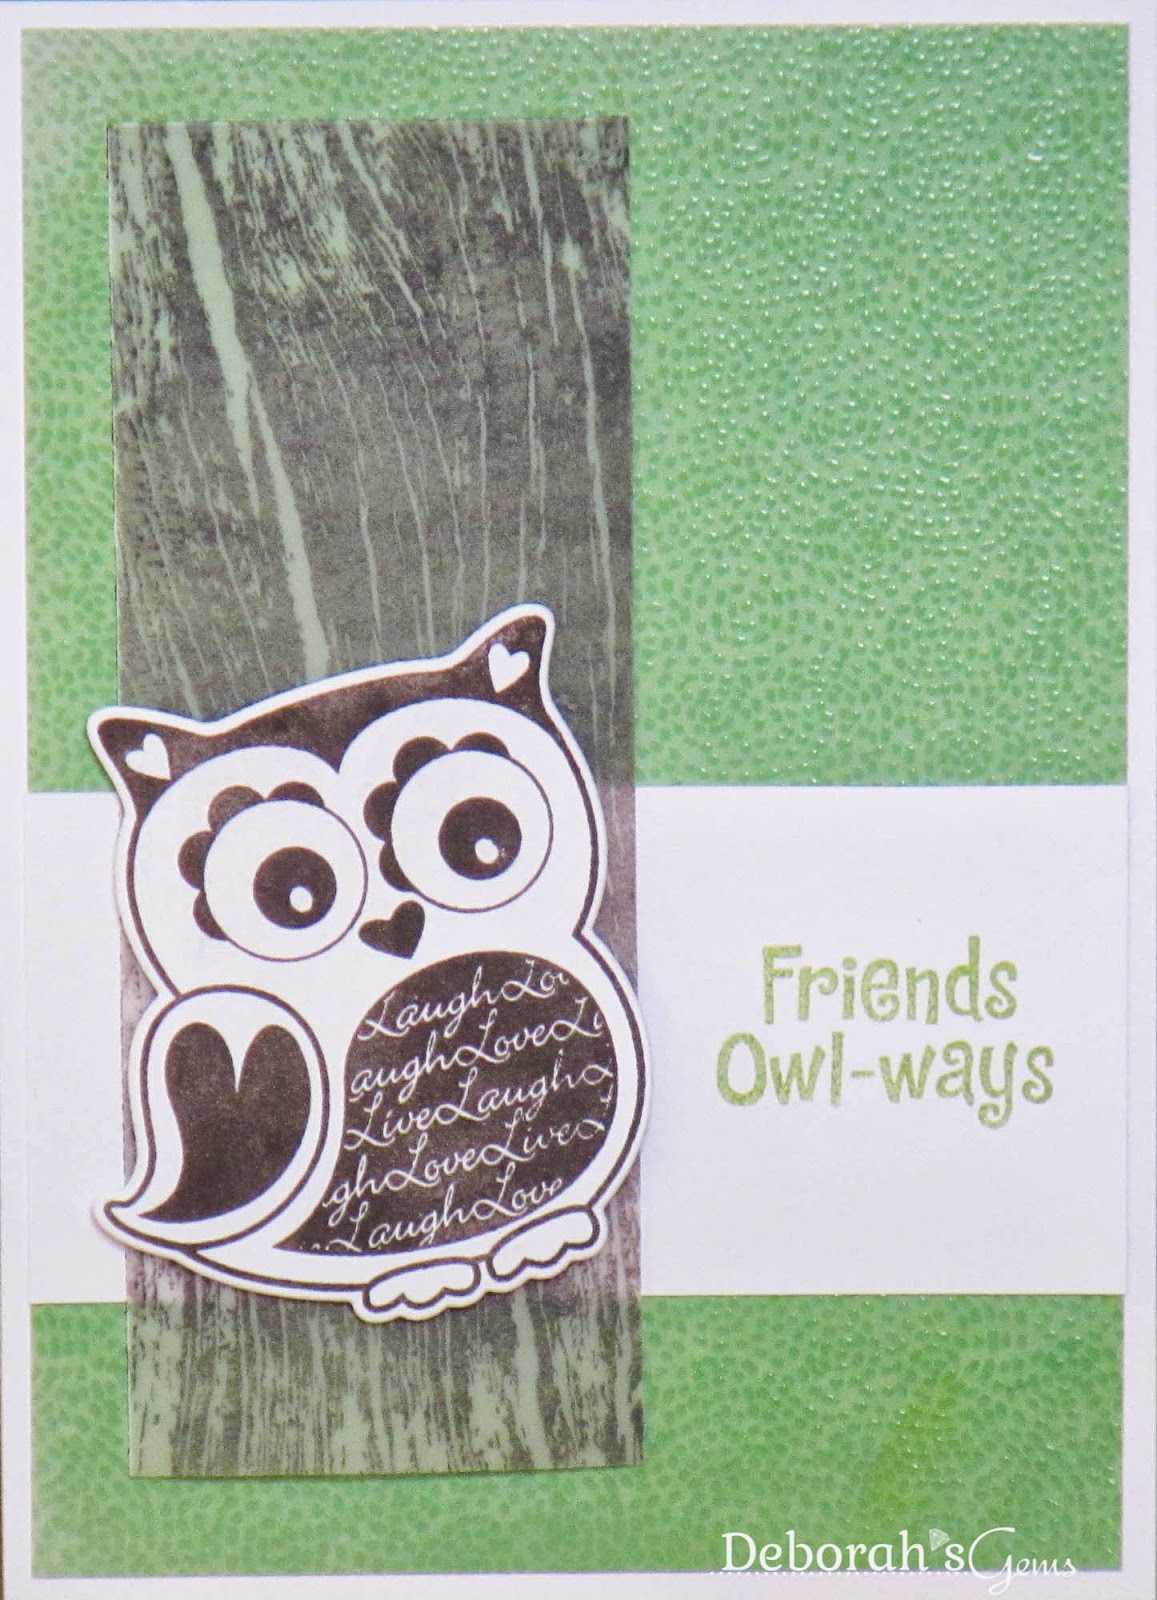 Friends Owl-ways - photo by Deborah Frings - Deborah's Gems